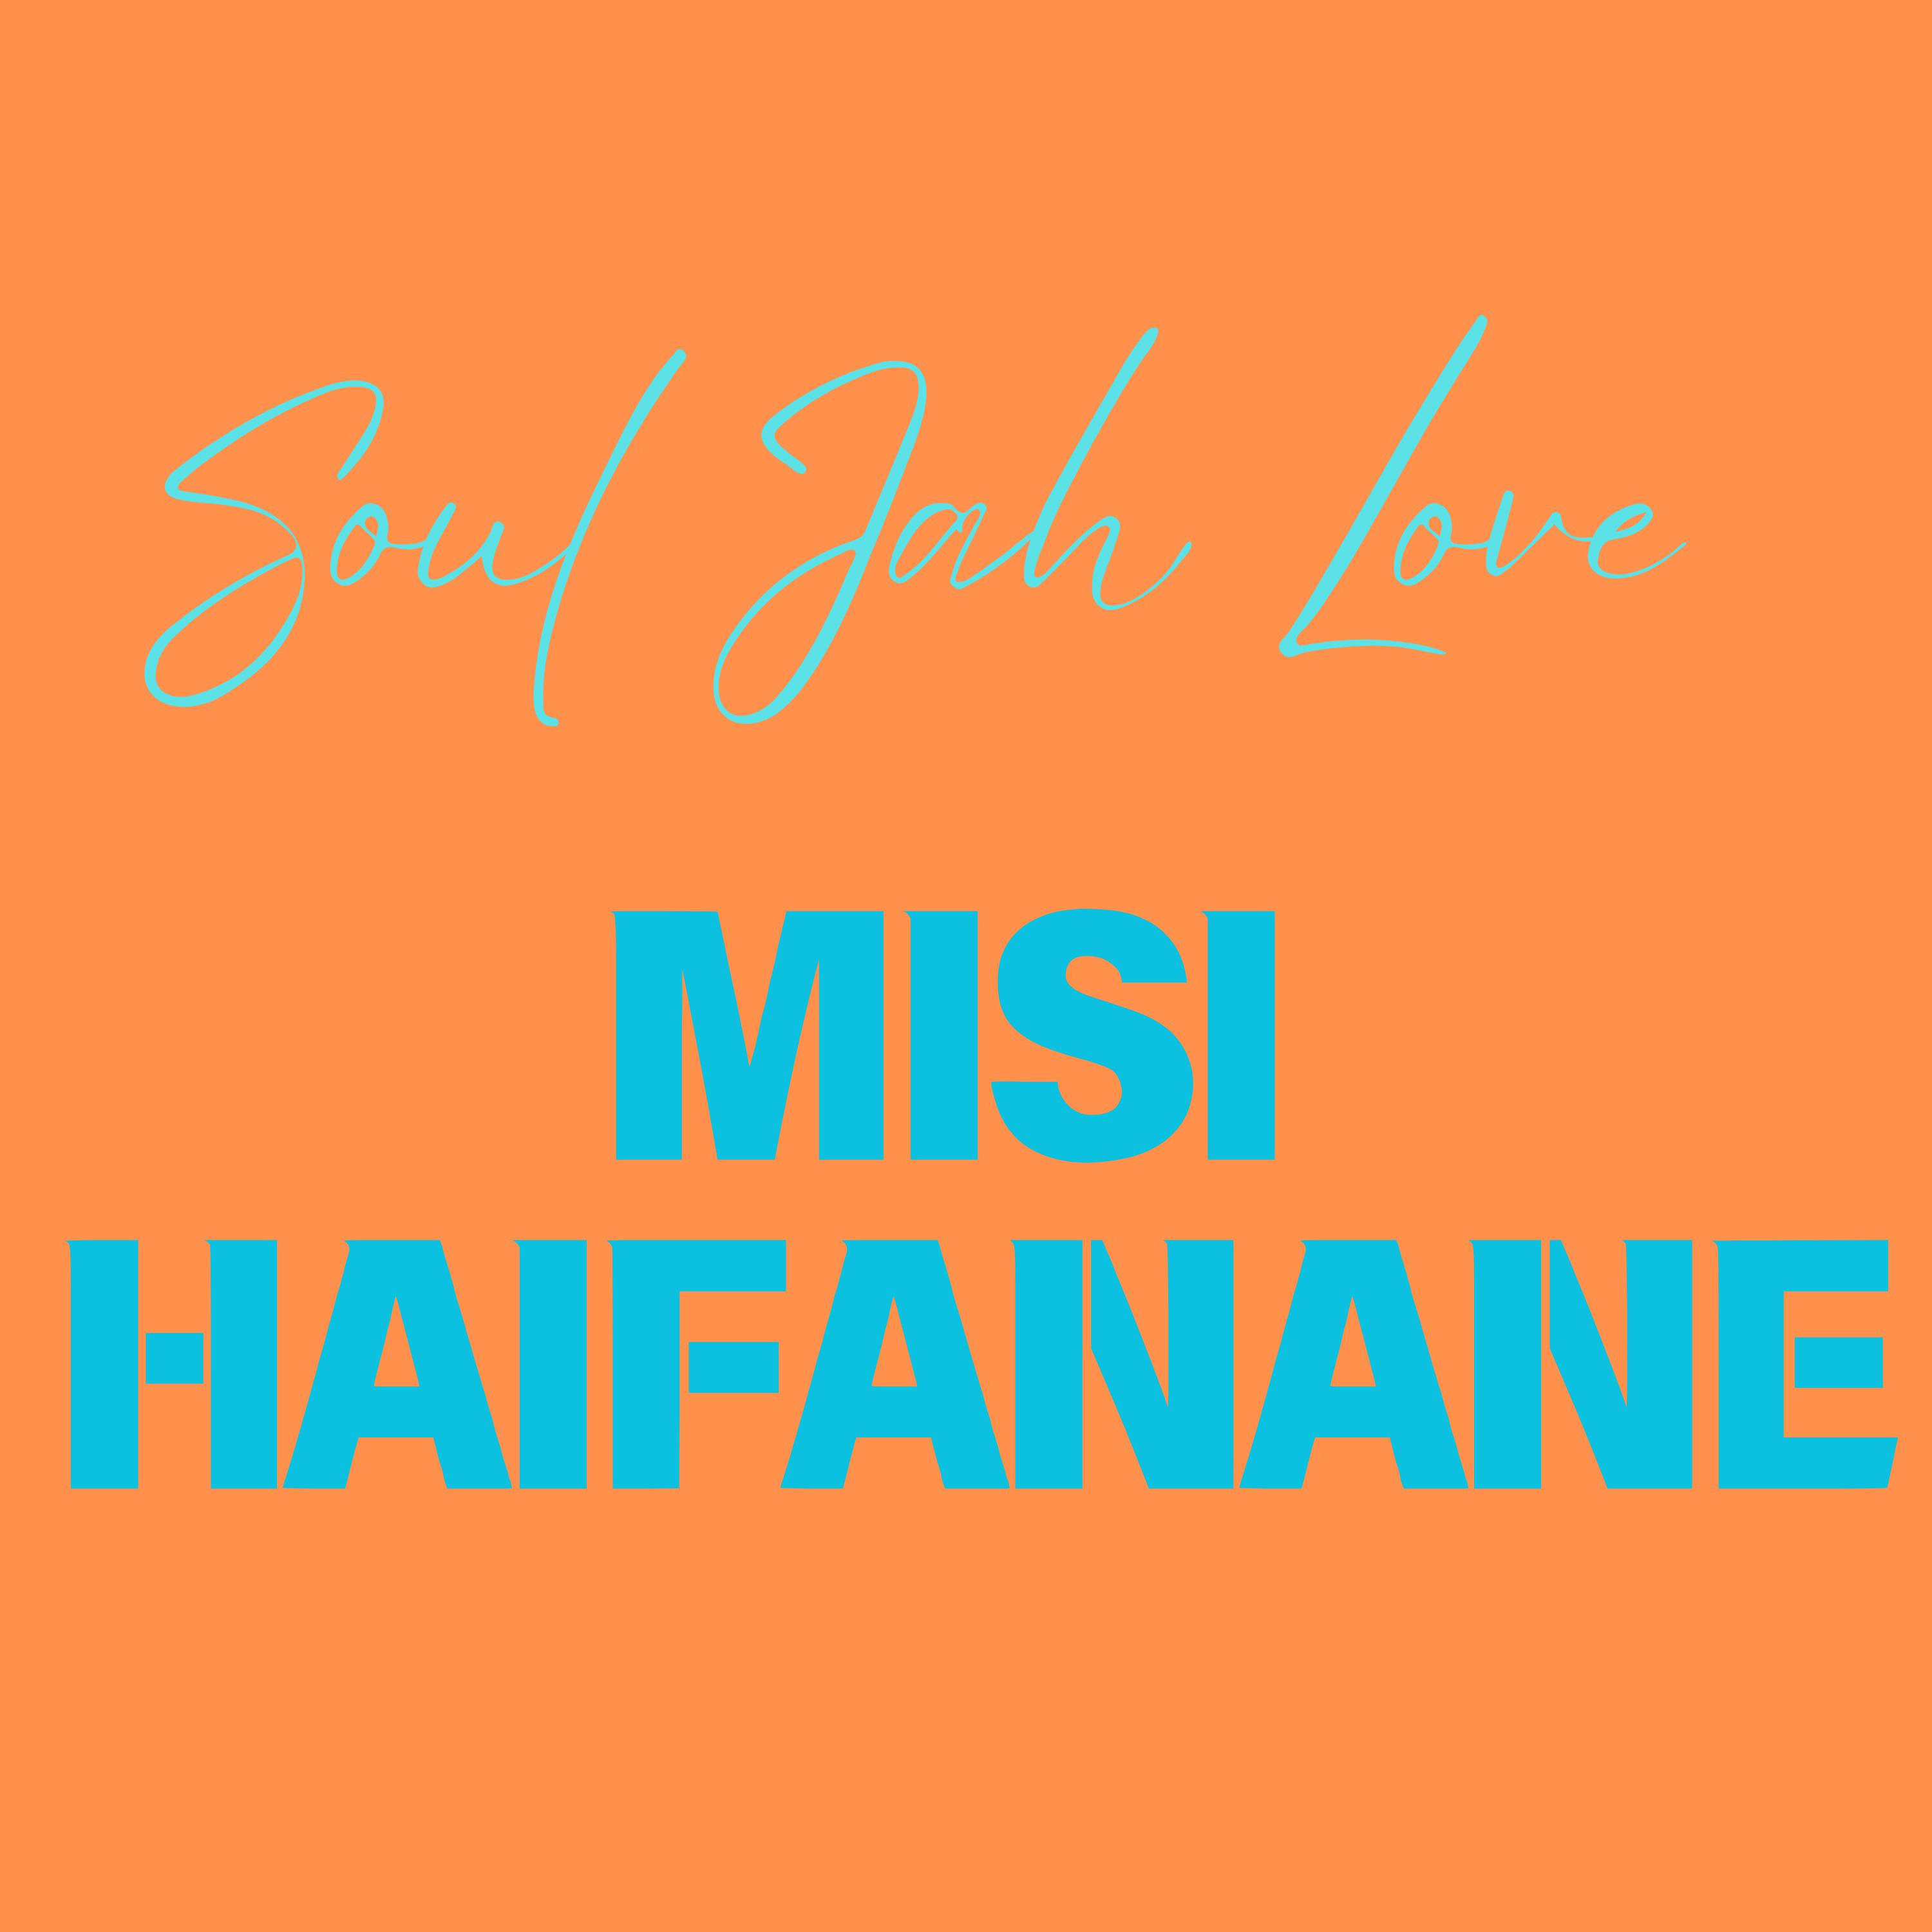 Soul Jah Love - Misi Haifanane